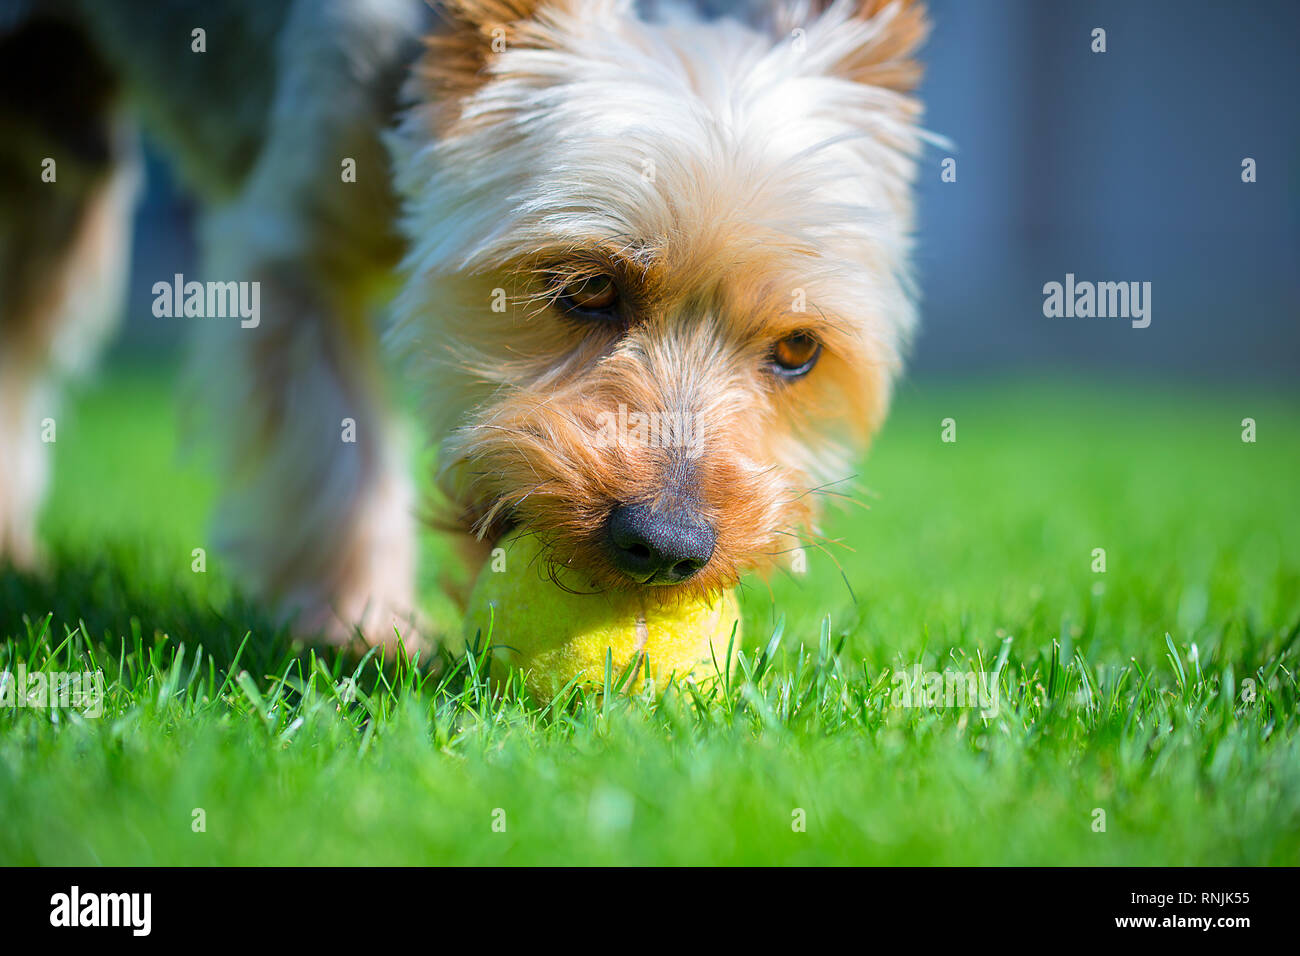 Adorabili Australian Silky Terrier giocare con palla da tennis sul fresco prato falciato in estate calda giornata di sole. Cane gioca su erba appena tagliata con sfera gialla. Foto Stock